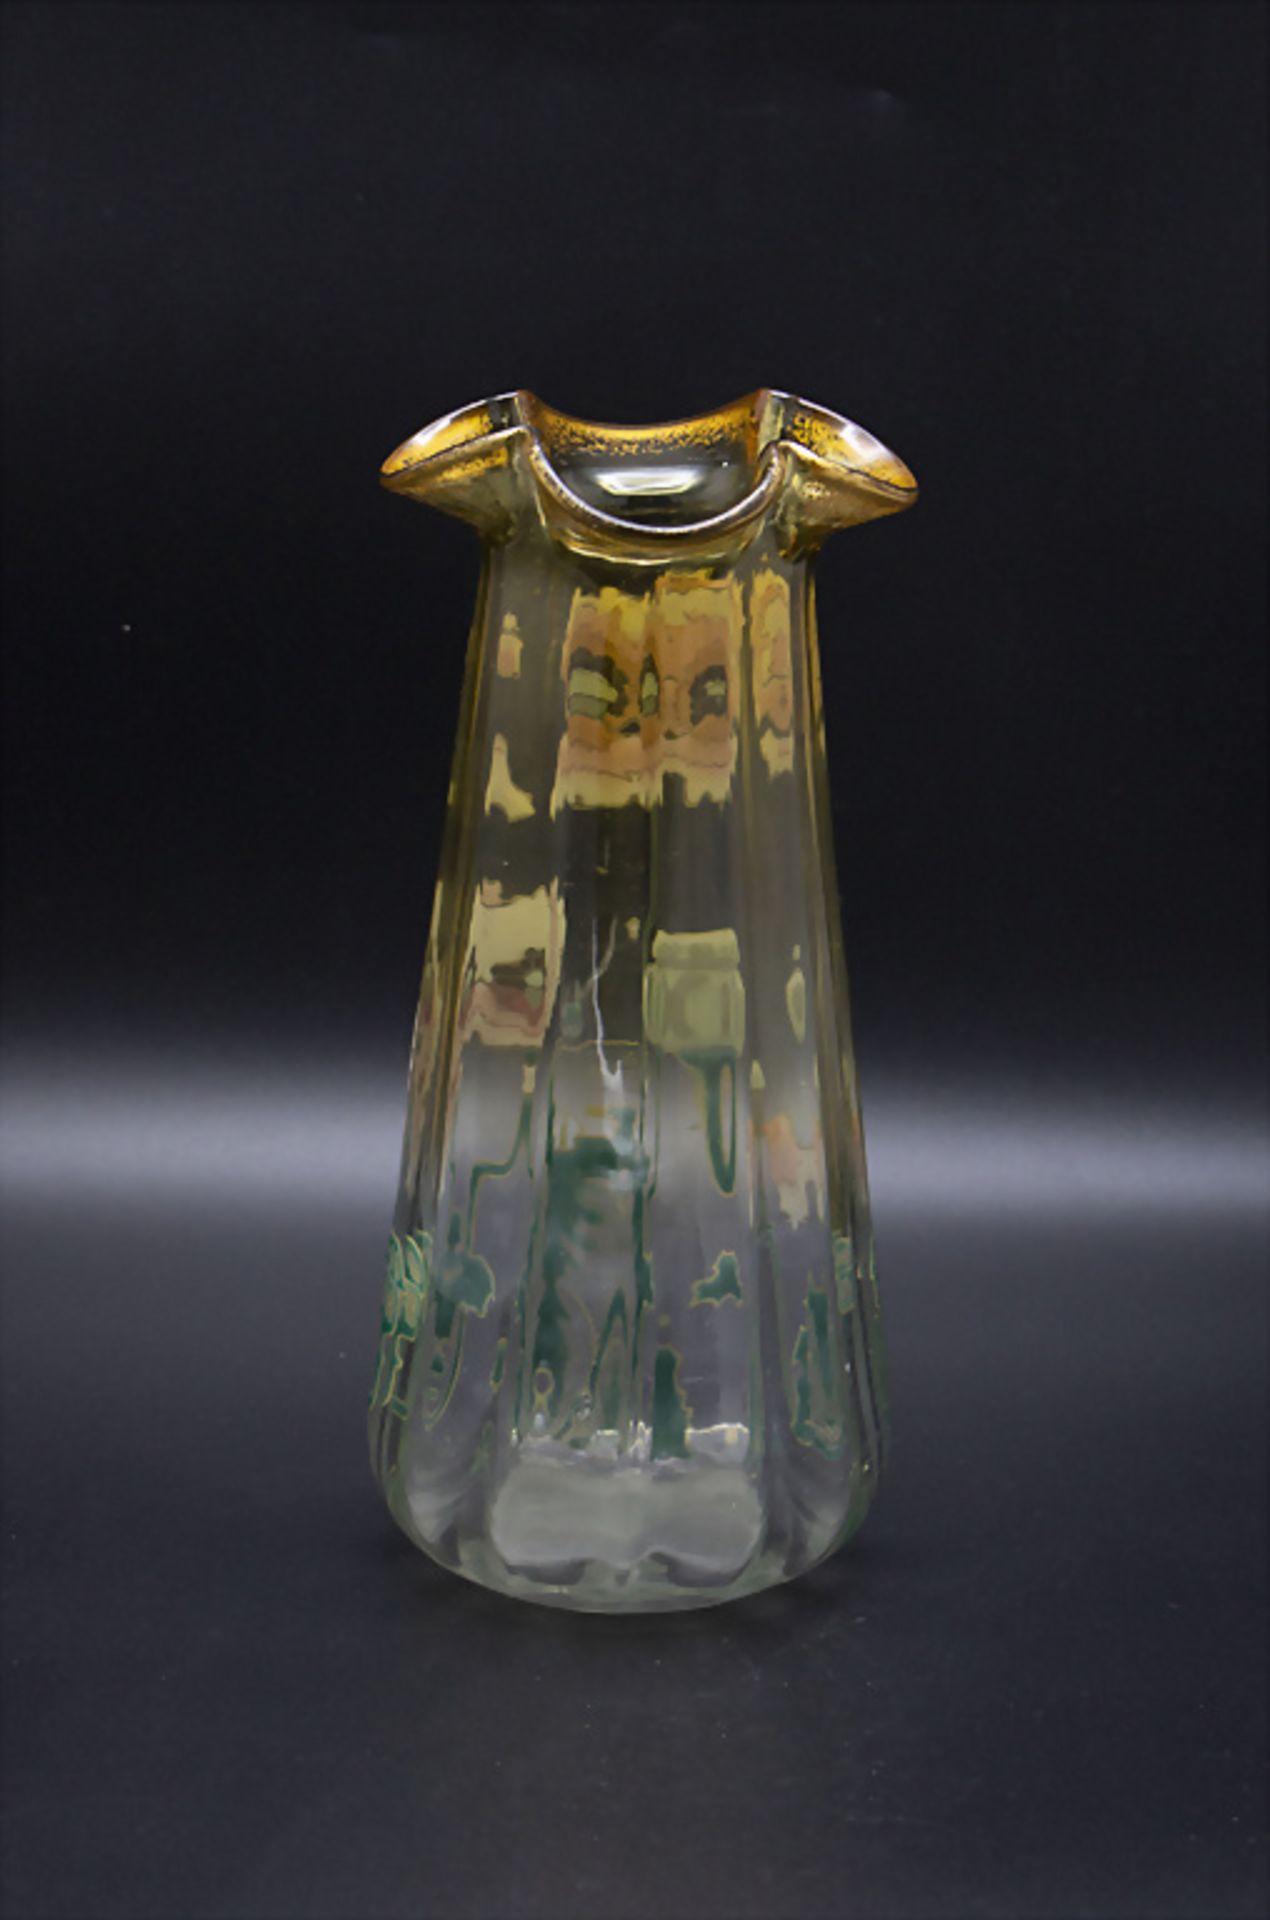 Jugendstil Vase mit Klatschmohn / An Art Nouveau glass vase with poppy flower, Legras, um 1900 - Image 2 of 3